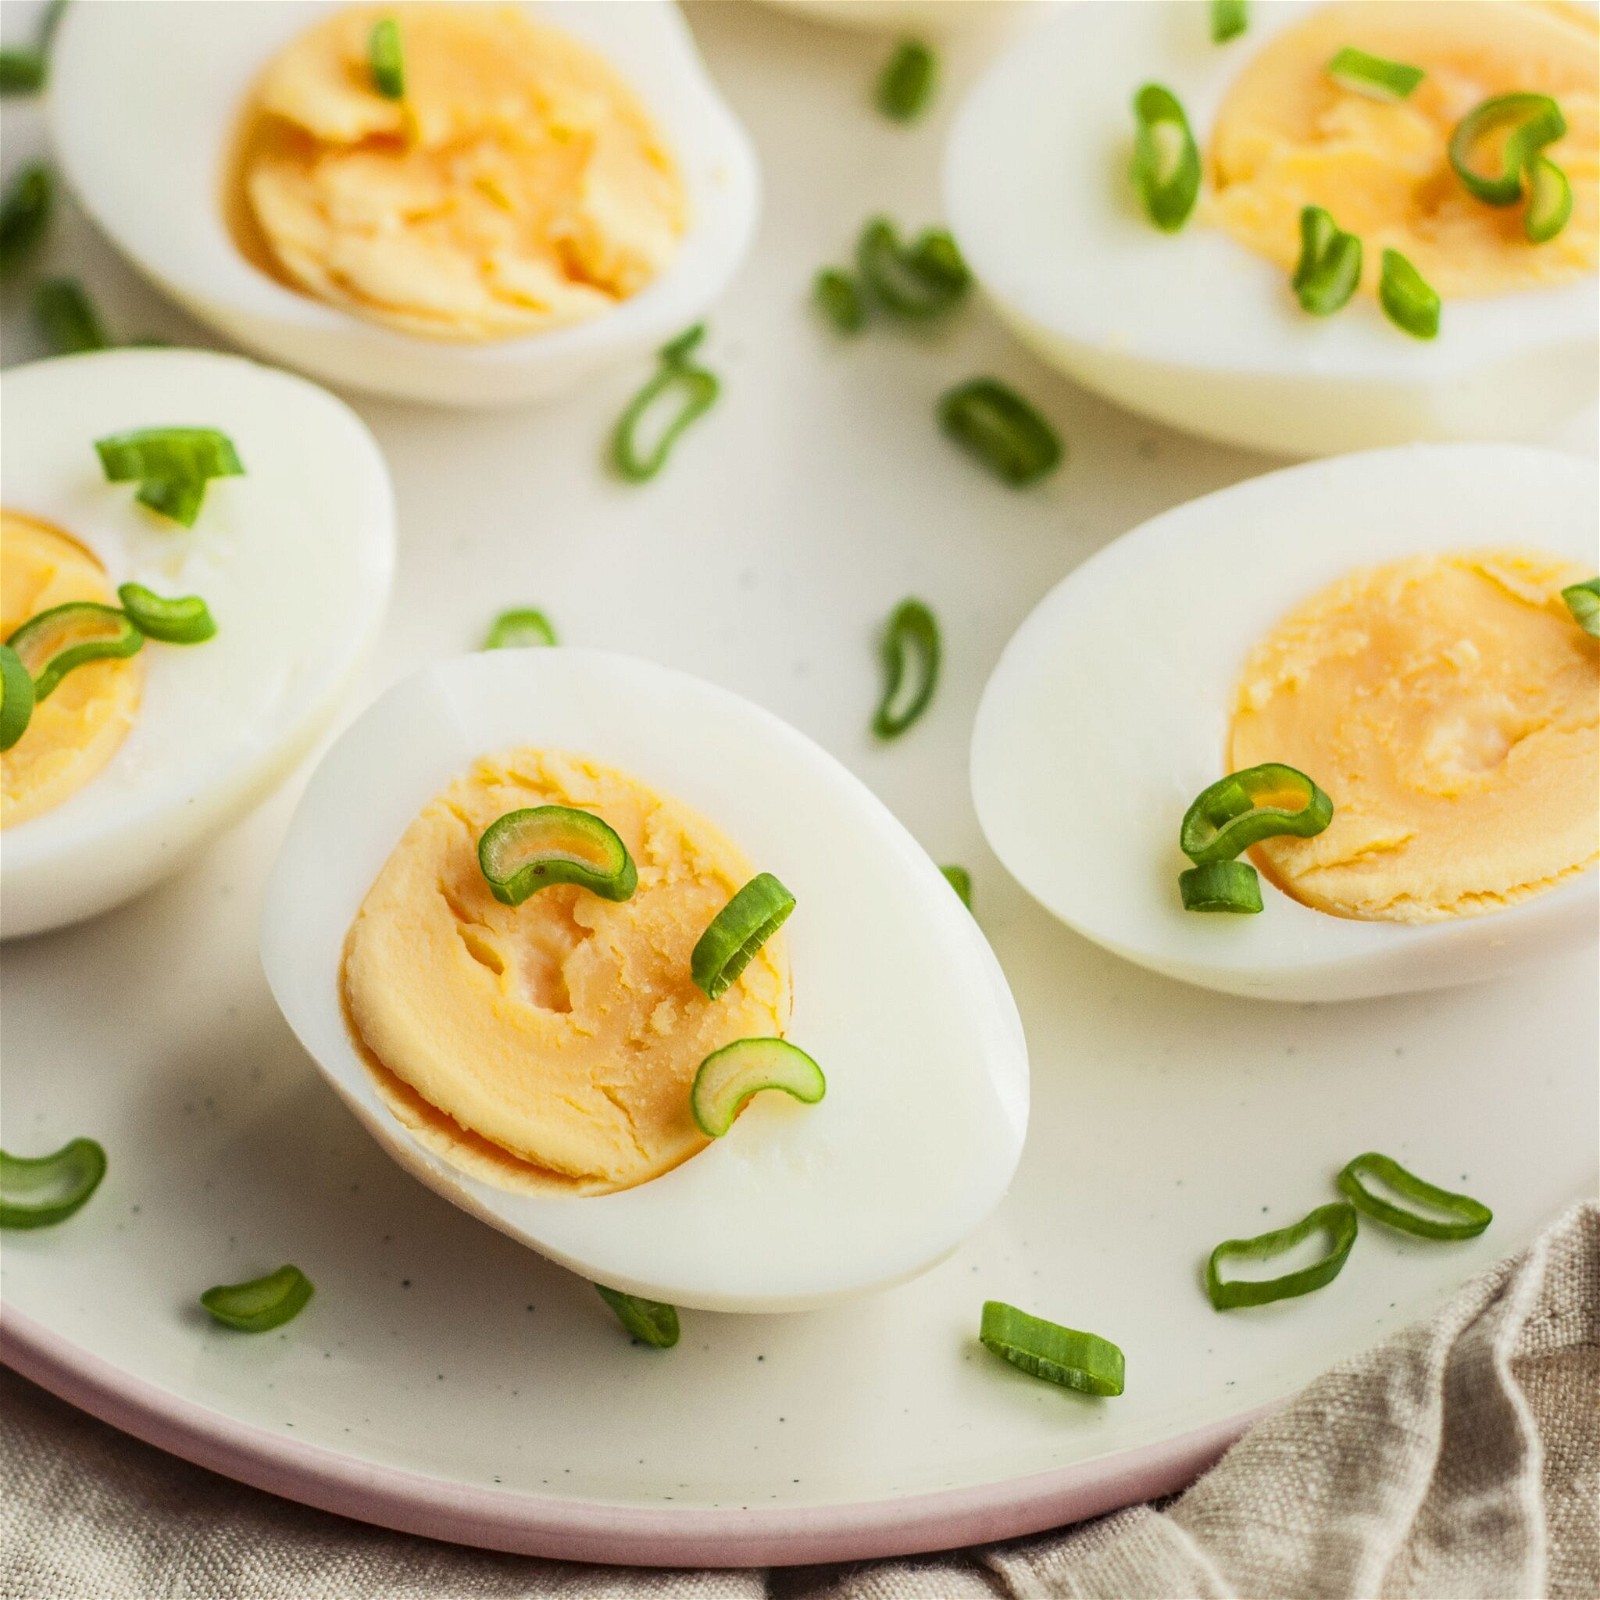 Mẹ bầu nên ăn trứng đã được làm chín hoặc luộc kỹ để tránh nhiễm khuẩn